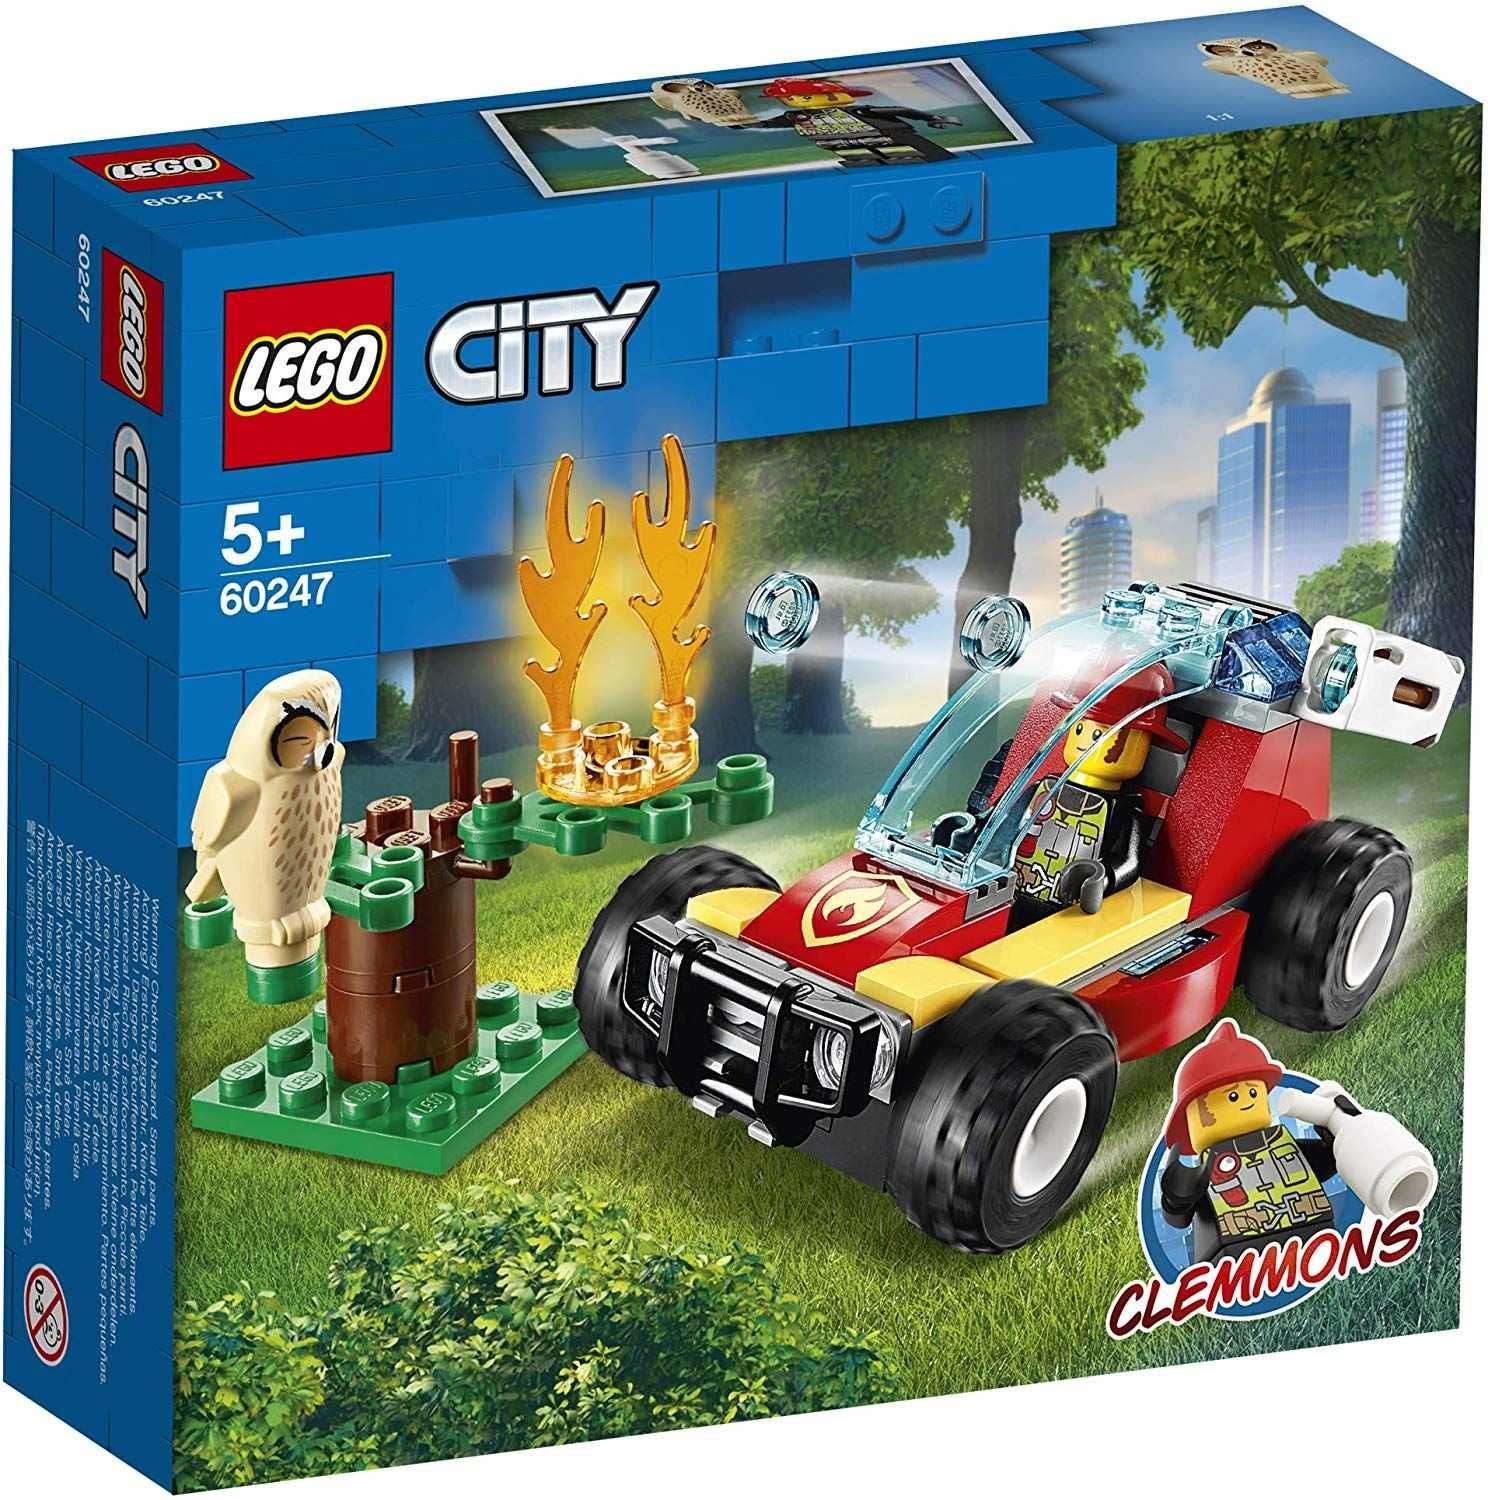 НОВО Lego City Fire - Горски пожар (60247) от 2020 г.